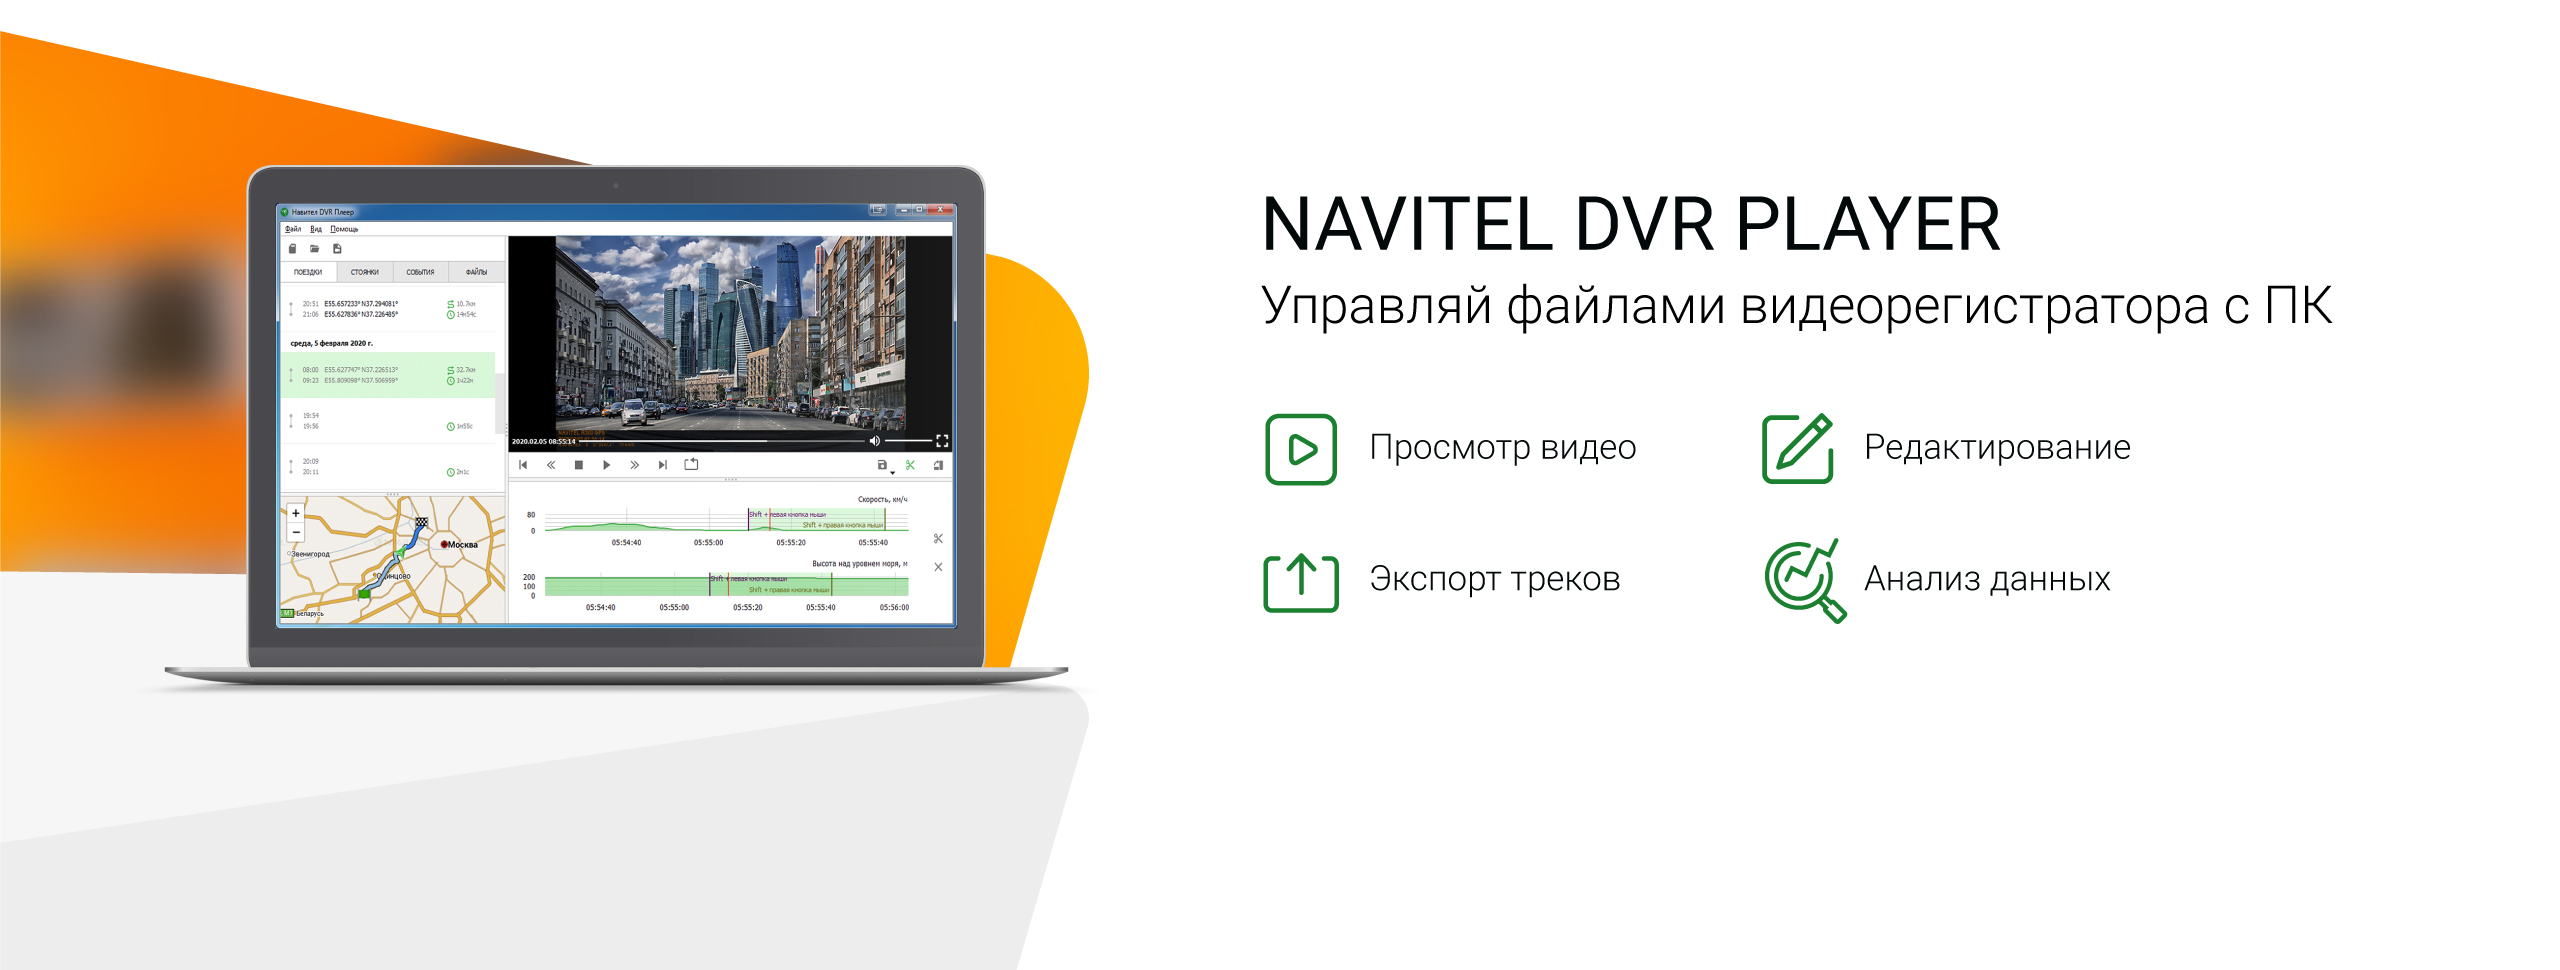 Программа Navitel DVR Player для просмотра видеозаписей регистраторов